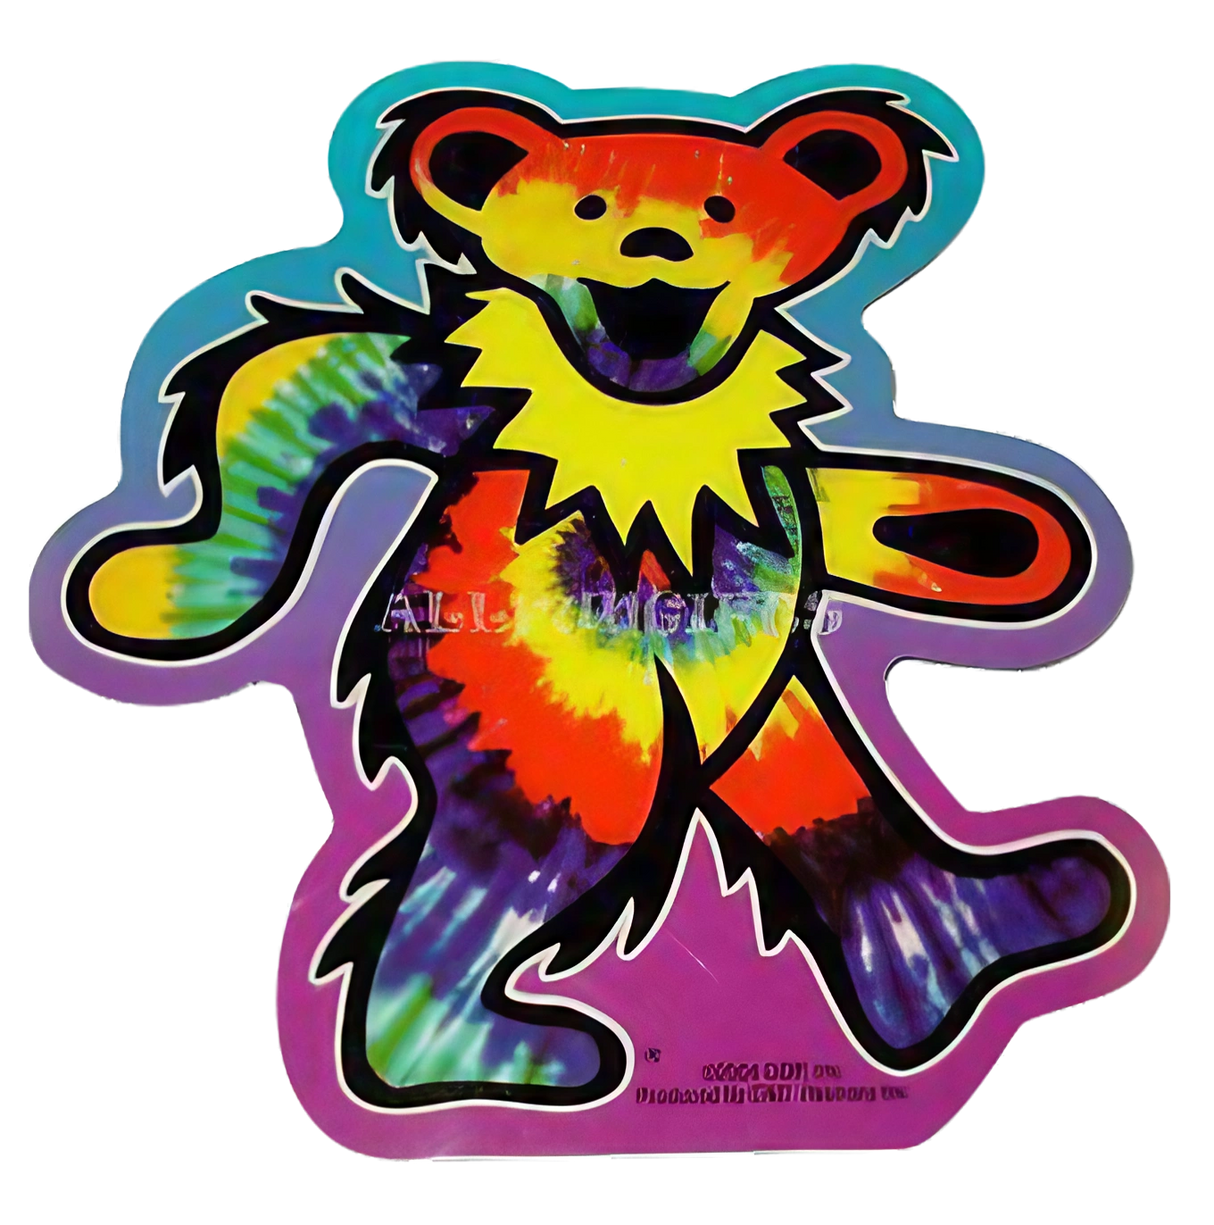 Colorful Grateful Dead Tie-Dye Bear Vinyl Sticker in Bear Shape on White Background